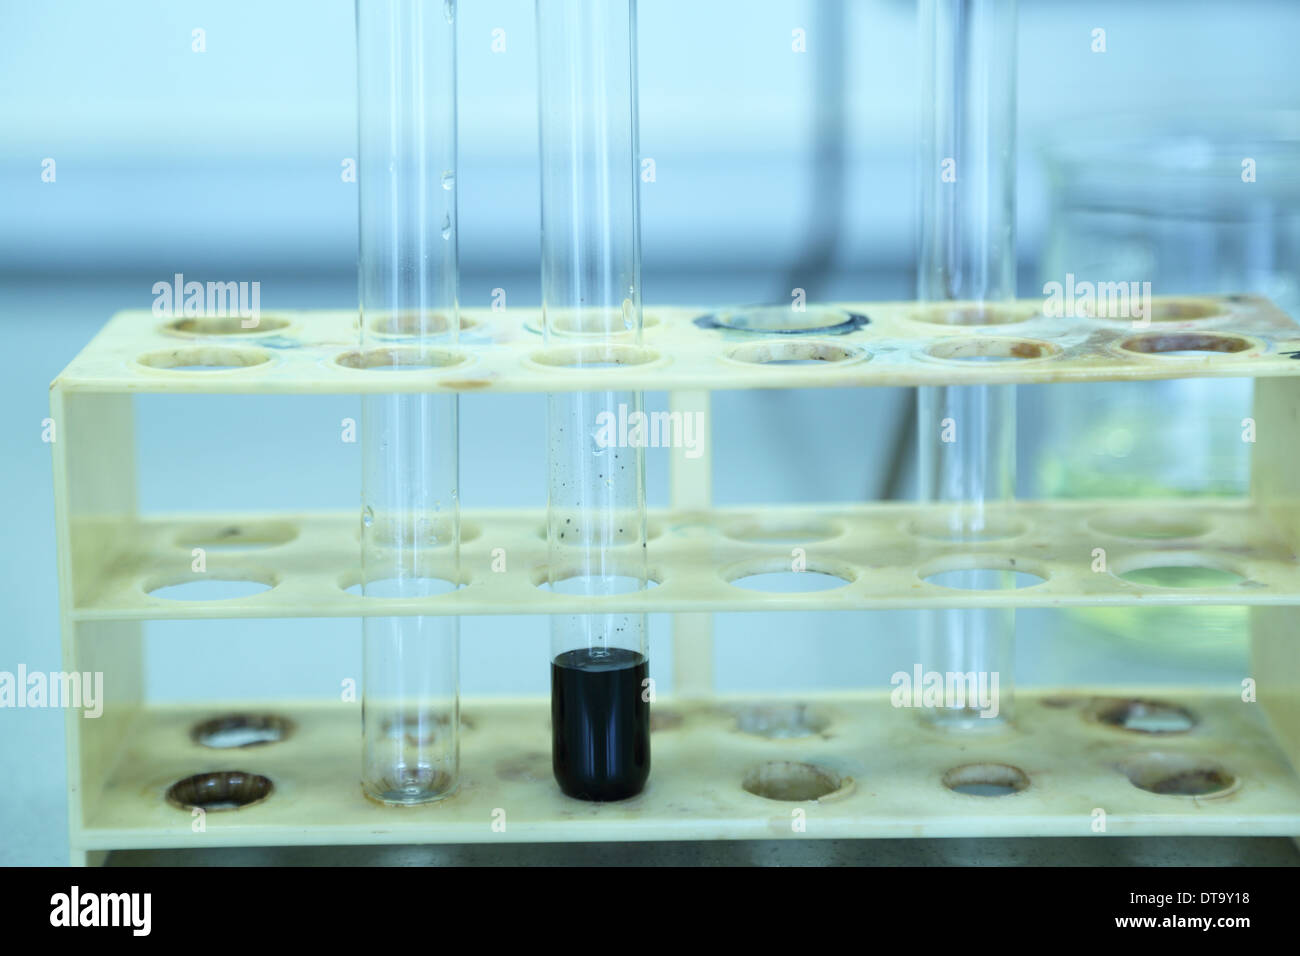 Les tubes de verre dans un travail de chimie Banque D'Images